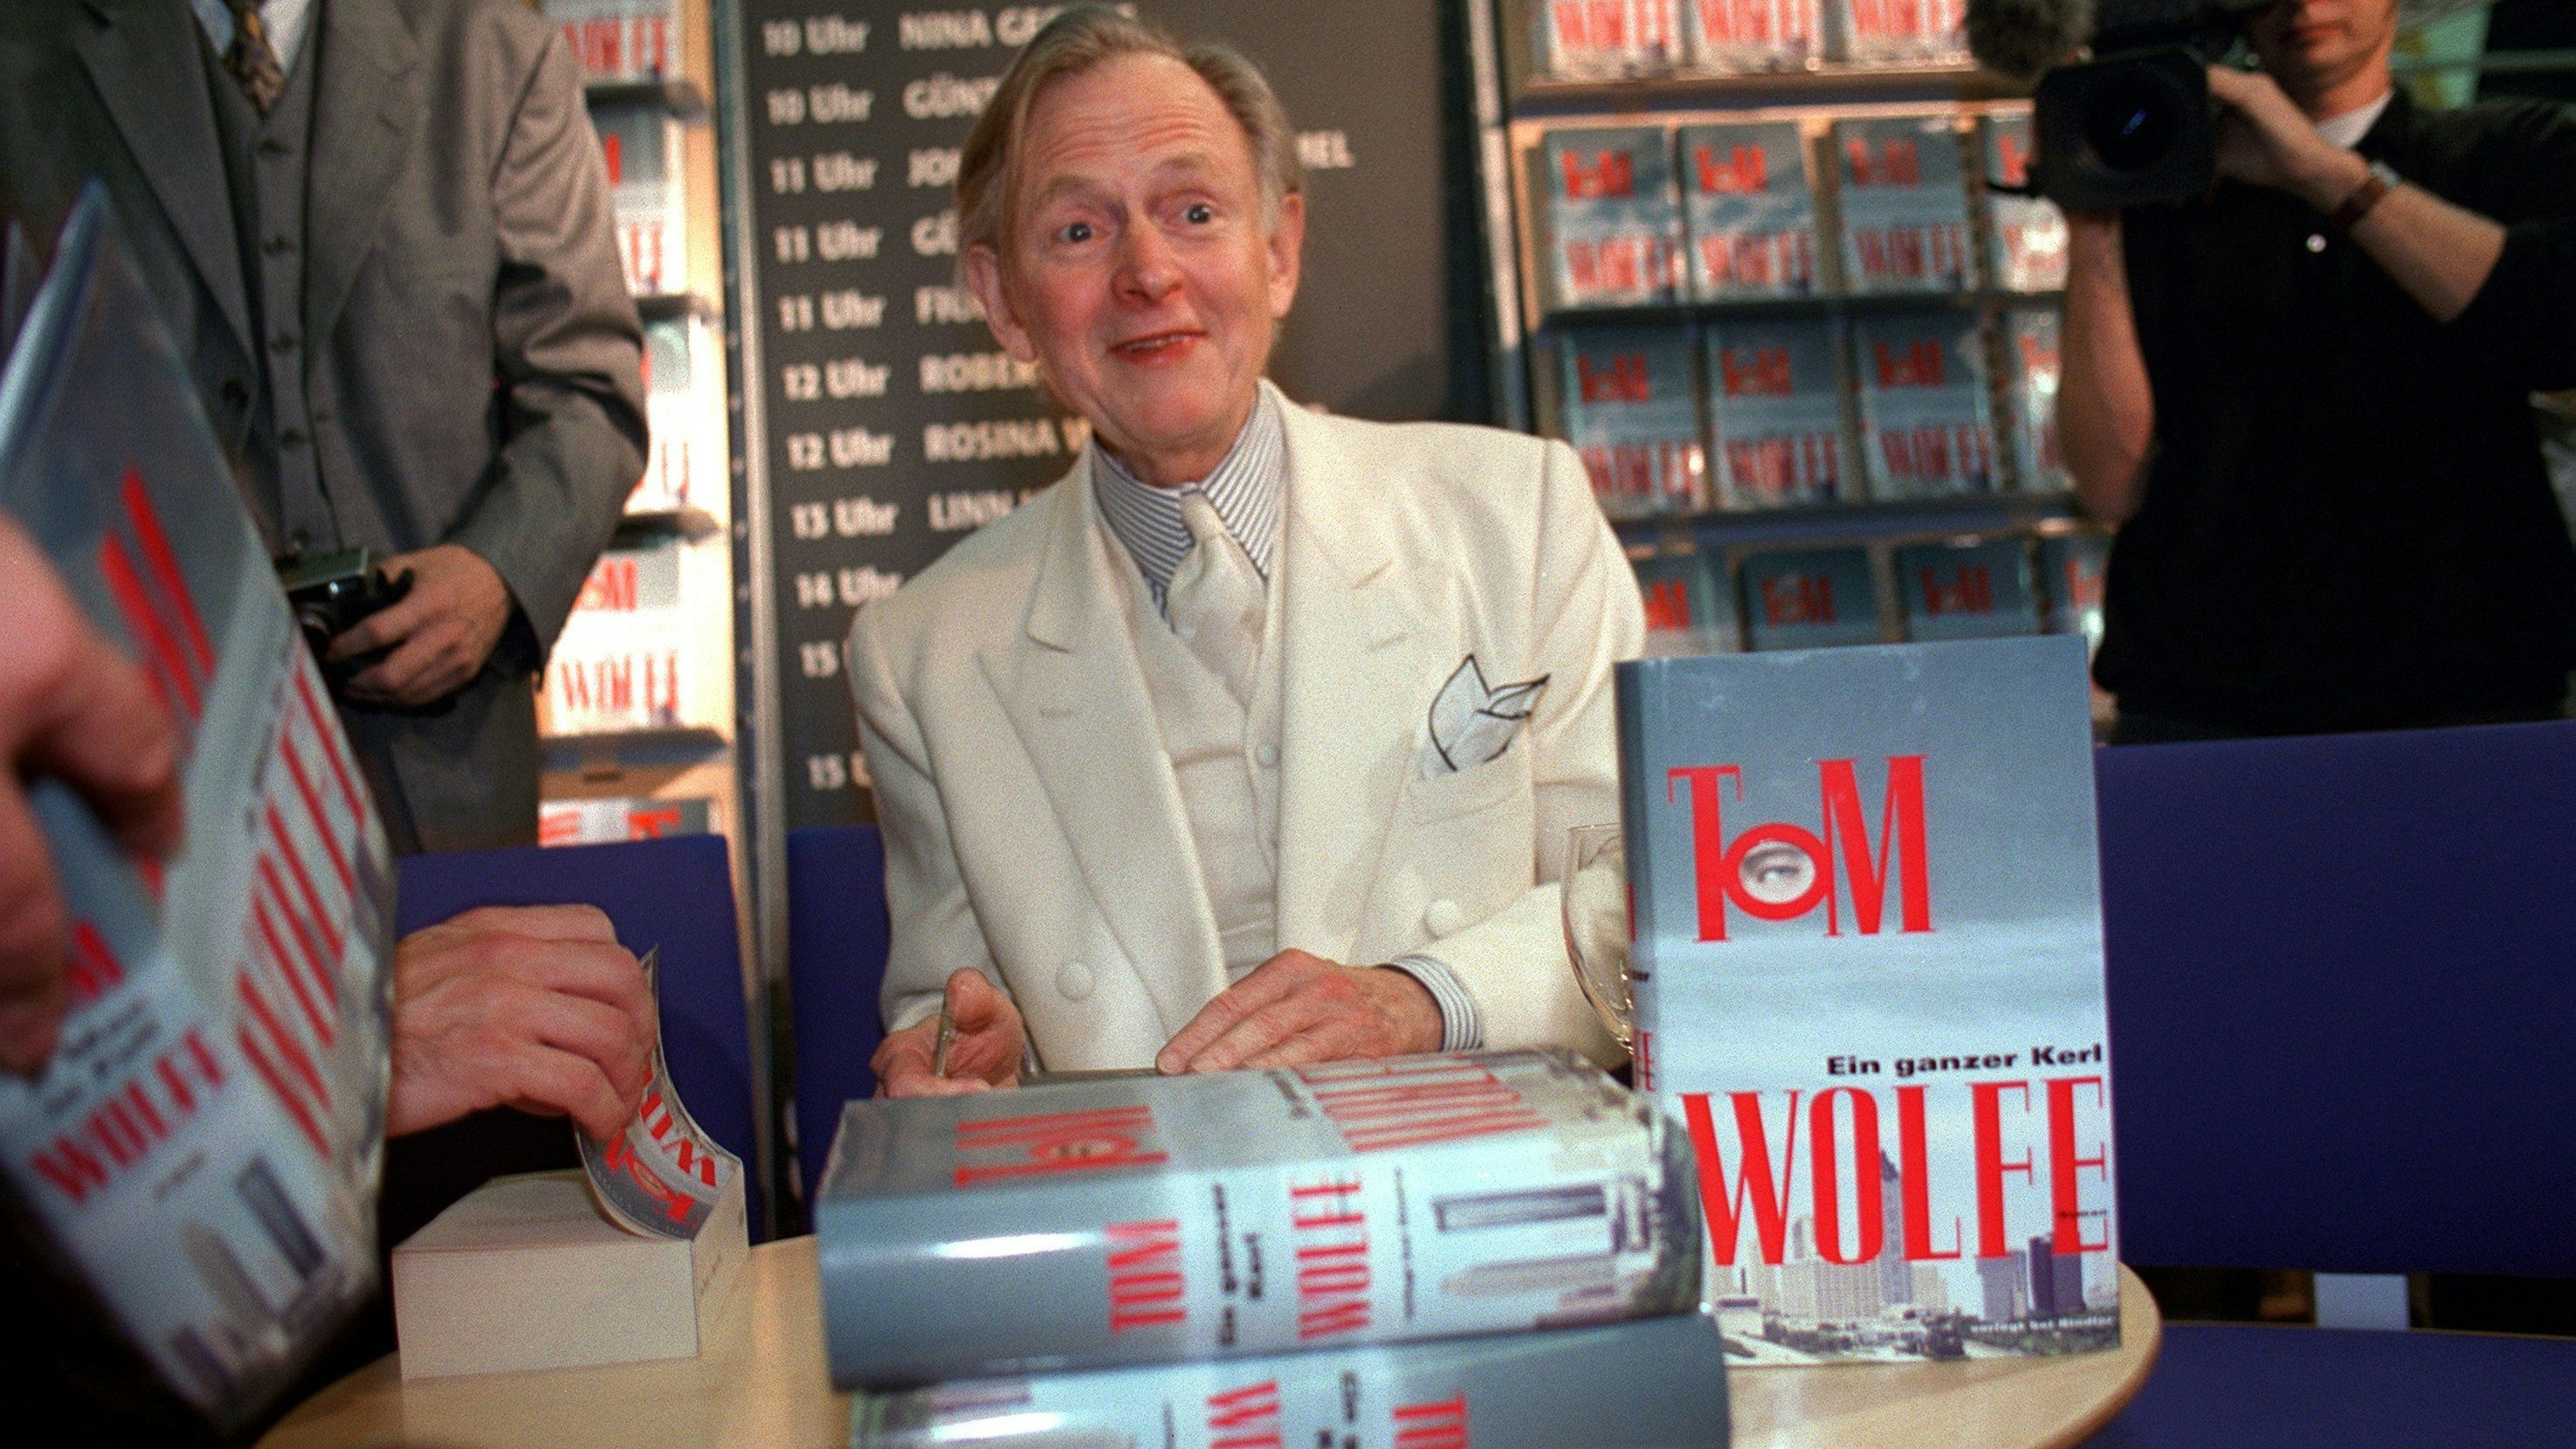 Ganzer Kerl: Bestsellerautor und Journalisten-Legende Tom Wolfe, der nahezu ausschließlich in weißen Anzügen auftrat, im Jahr 1998 bei der Präsentation der deutschen Ausgabe seines zweiten Romans "Ein ganzer Kerl"